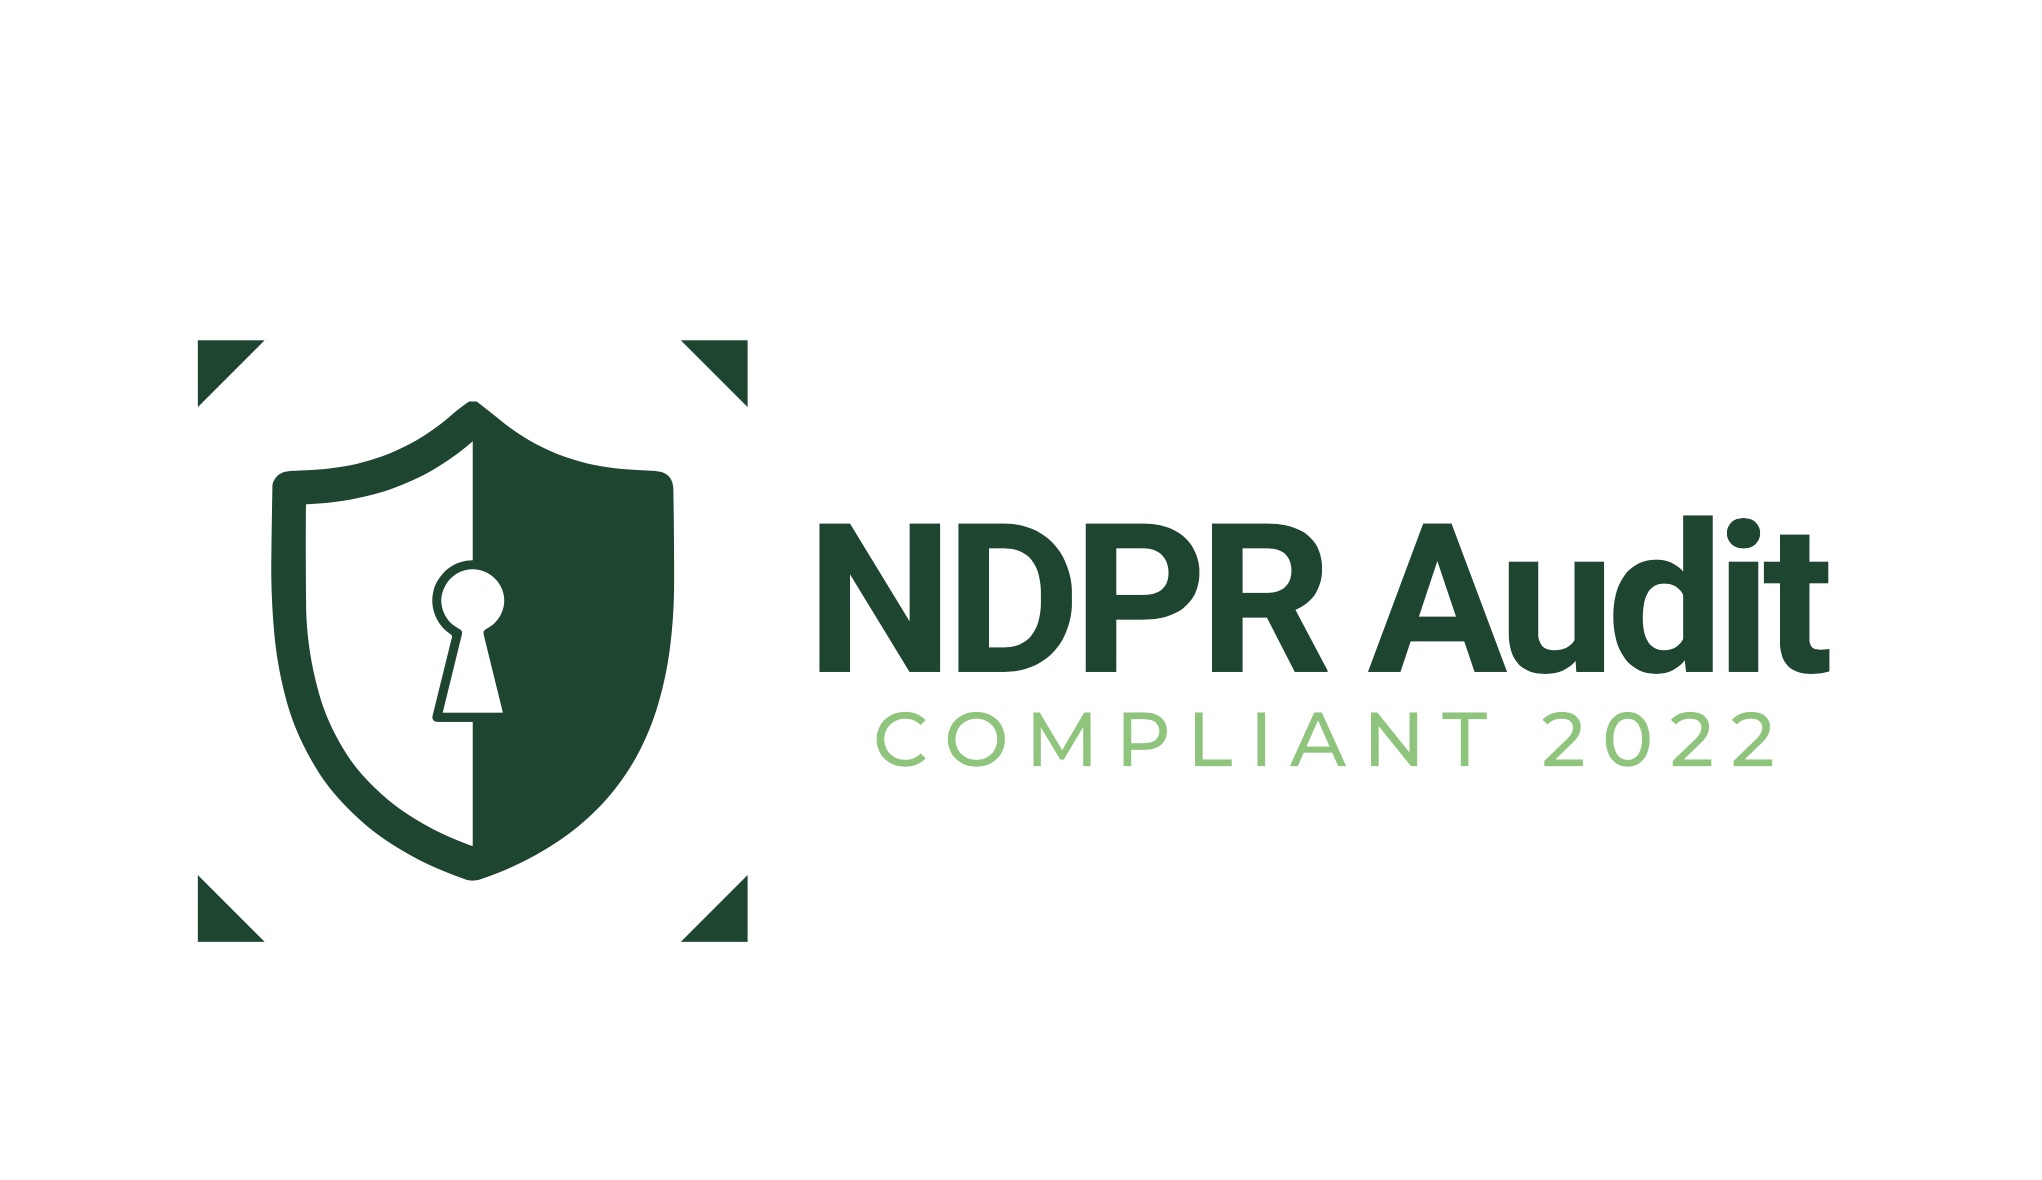 NDPR Audit Compliant 2022